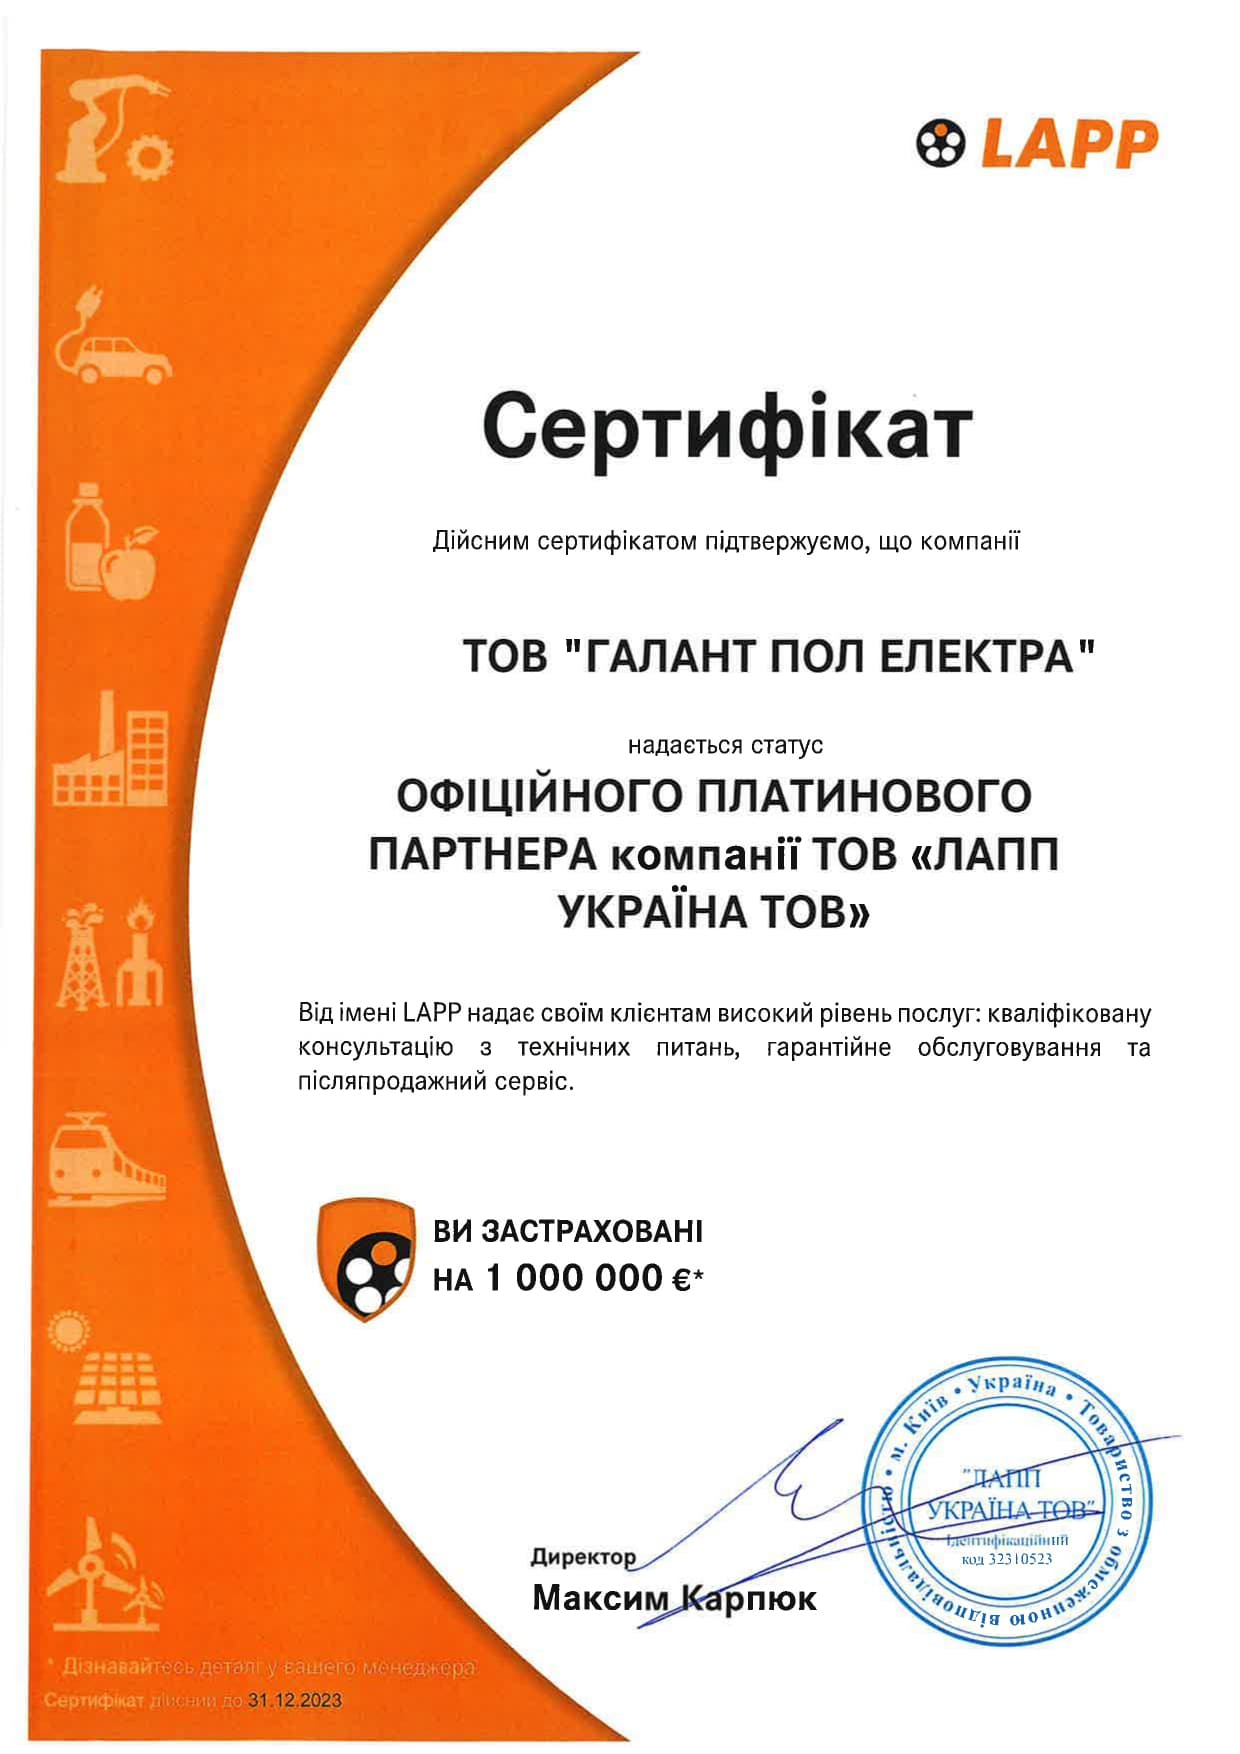 Сертификат дистрибьютора Lapp Group 2022